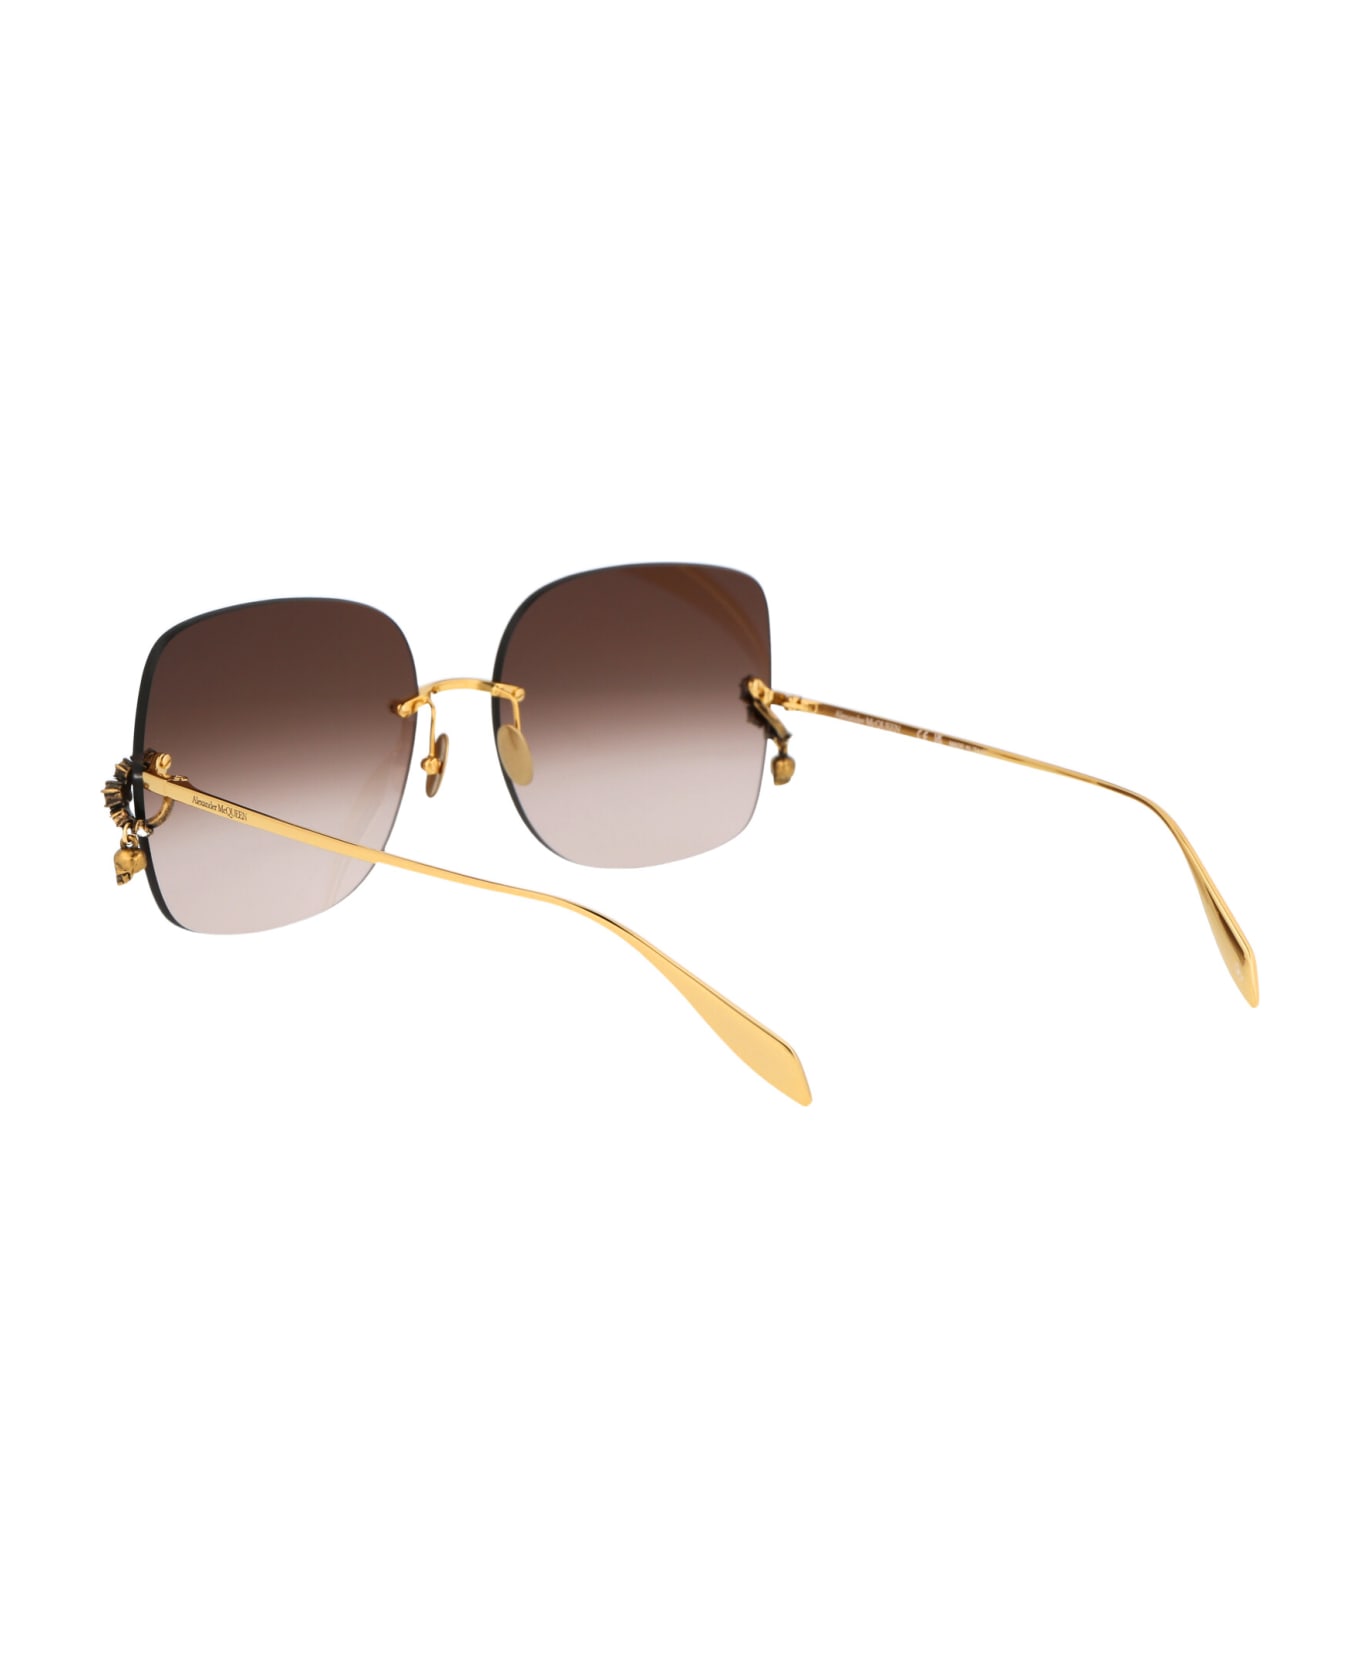 Alexander McQueen Eyewear Am0390s Sunglasses - 002 GOLD GOLD BROWN